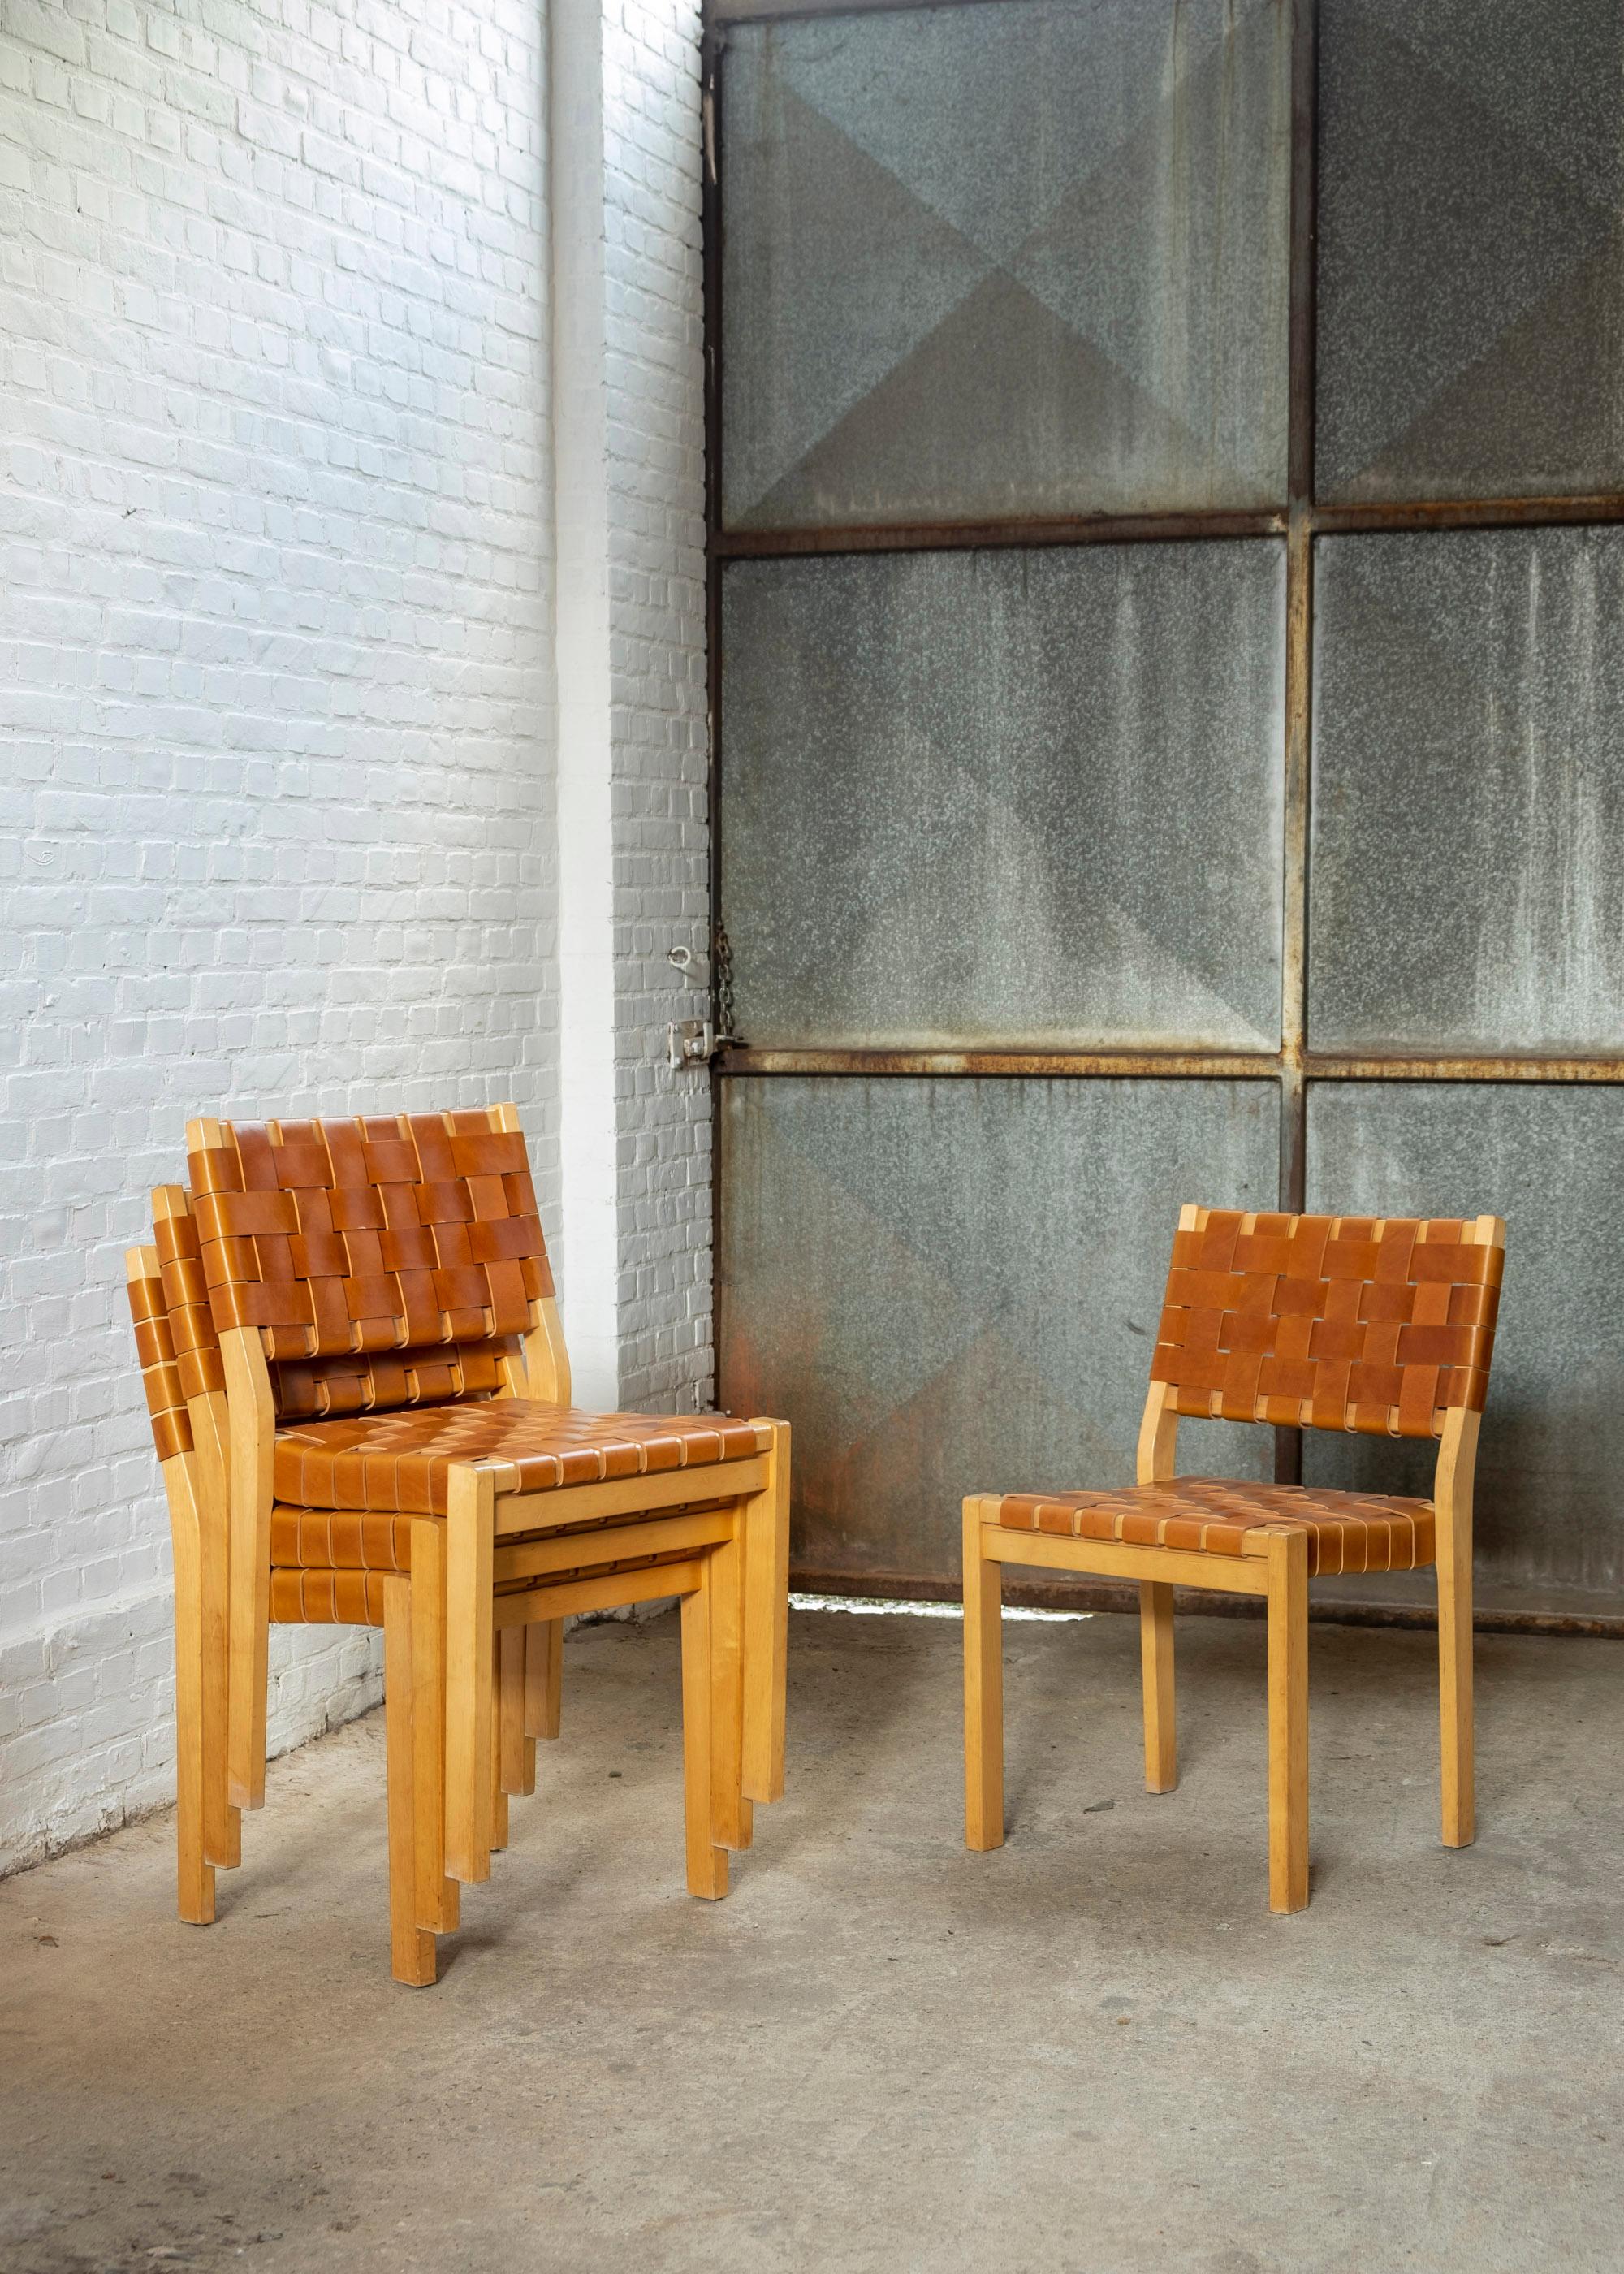 Ensemble de 4 chaises Alvar Aalto modèle 611, structure en bois de bouleau recouverte de sangles en cuir de selle de haute qualité de couleur cognac, produites par Artek dans les années 1970. La chaise 611 a été conçue par Alvar Aalto en 1929, l'un